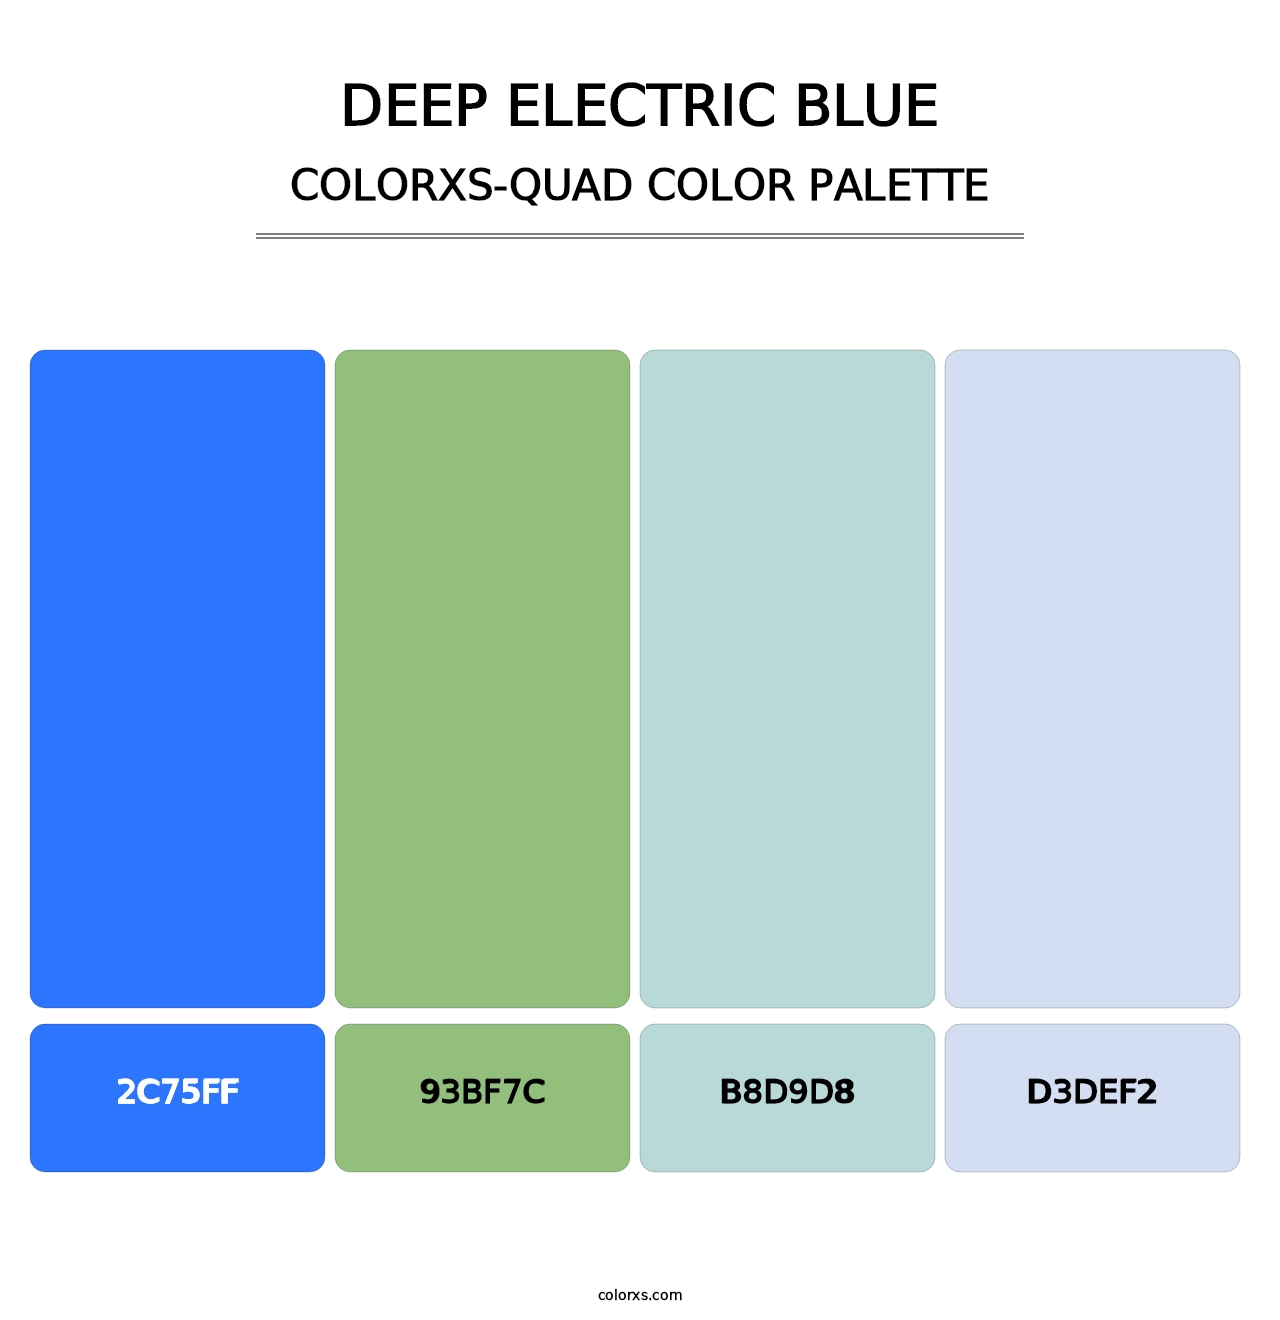 Deep Electric Blue - Colorxs Quad Palette